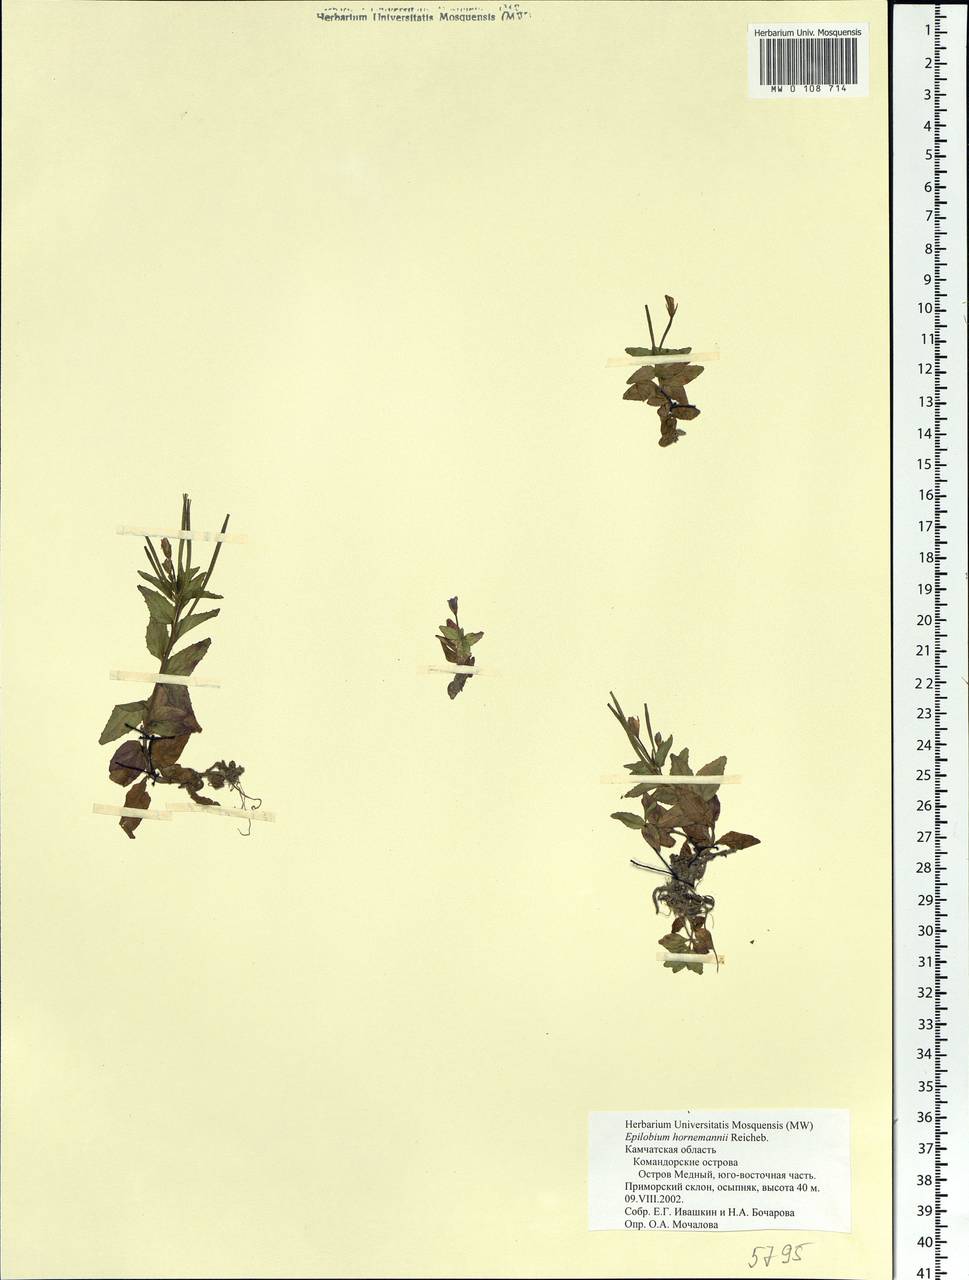 Epilobium hornemannii Rchb., Siberia, Chukotka & Kamchatka (S7) (Russia)